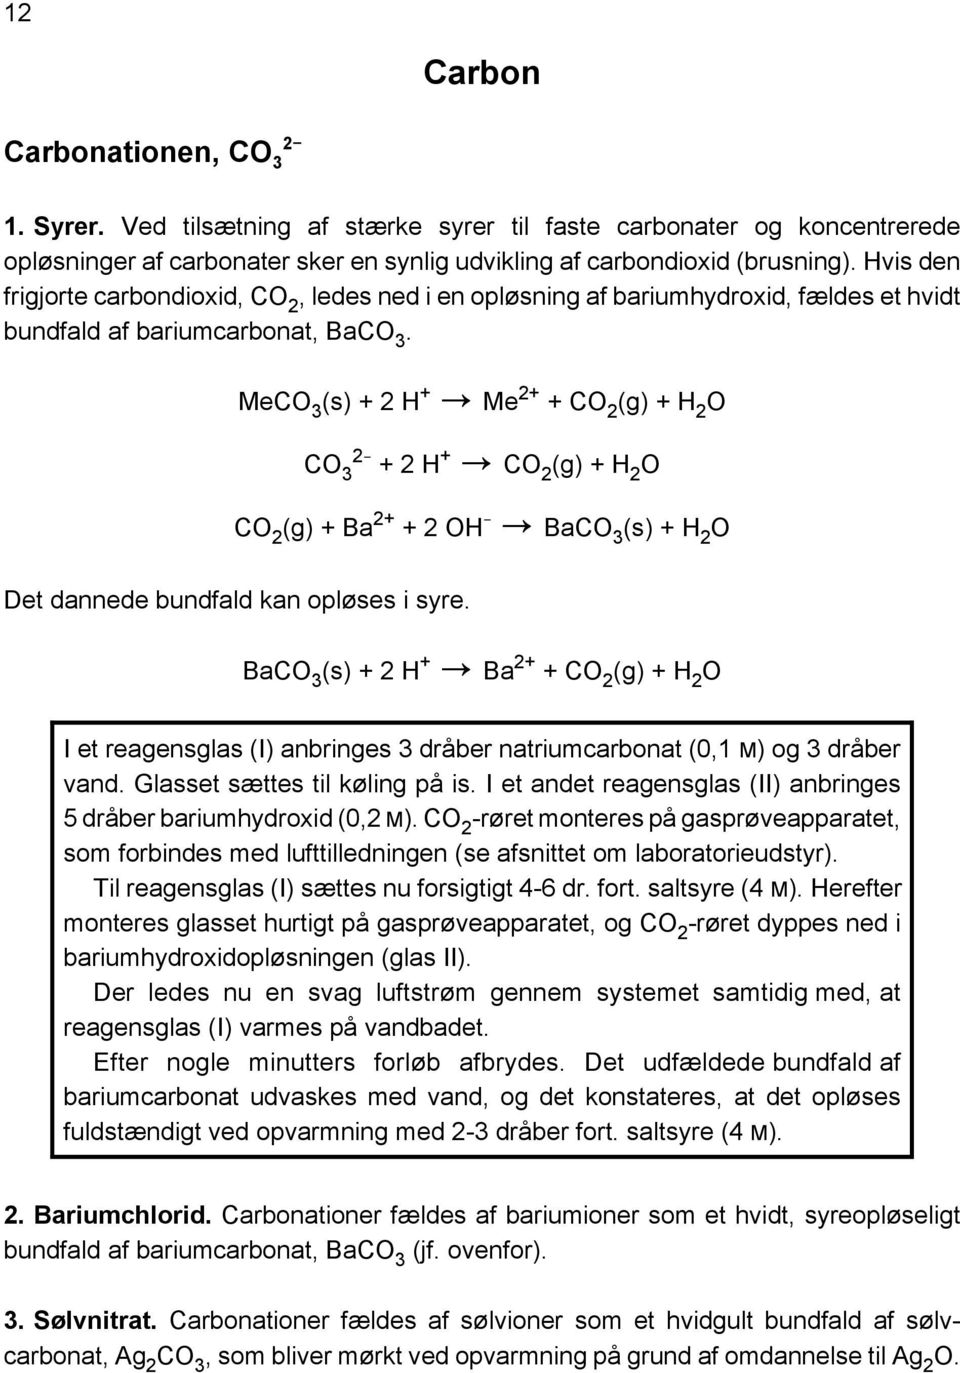 Udvalgte kemi i vandig opløsning PDF Gratis download